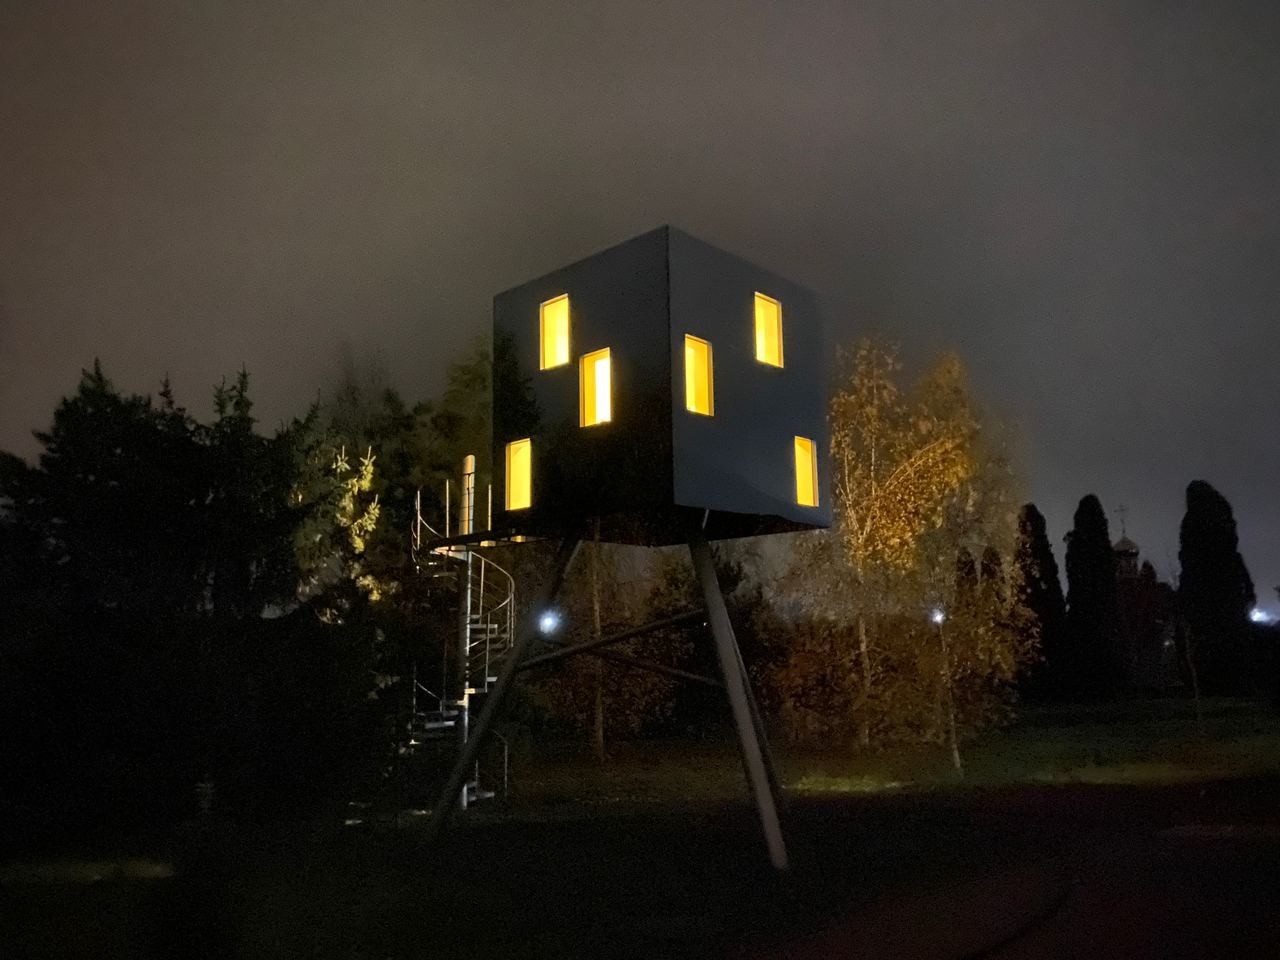 Mirror cube at night light